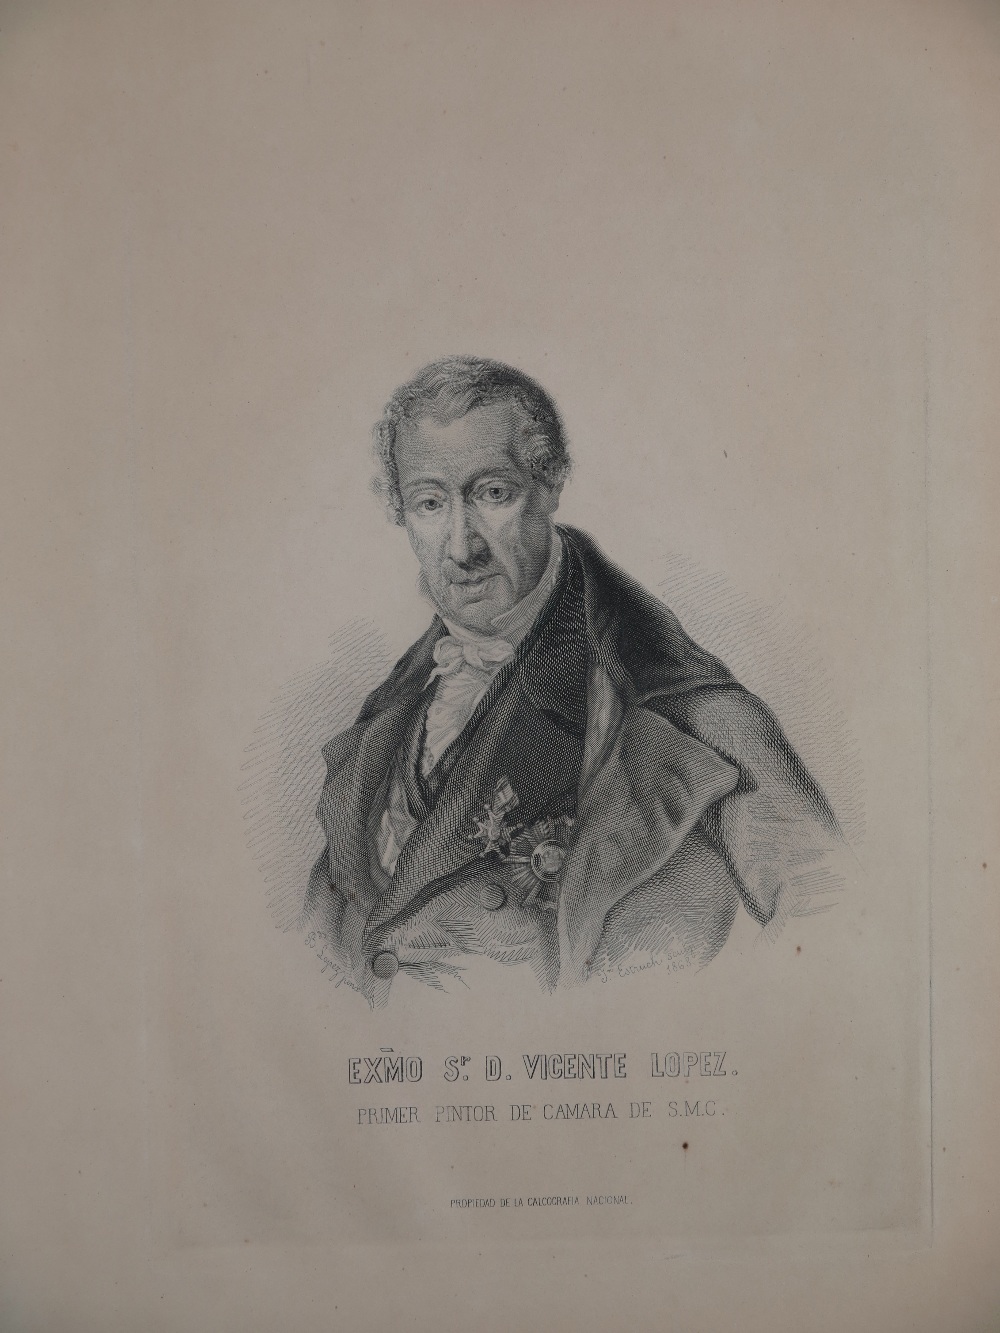 Juan Estruch (Barcelona, 1820 - Madrid, 1868)
"Retrato de Vicente López", grabado de la